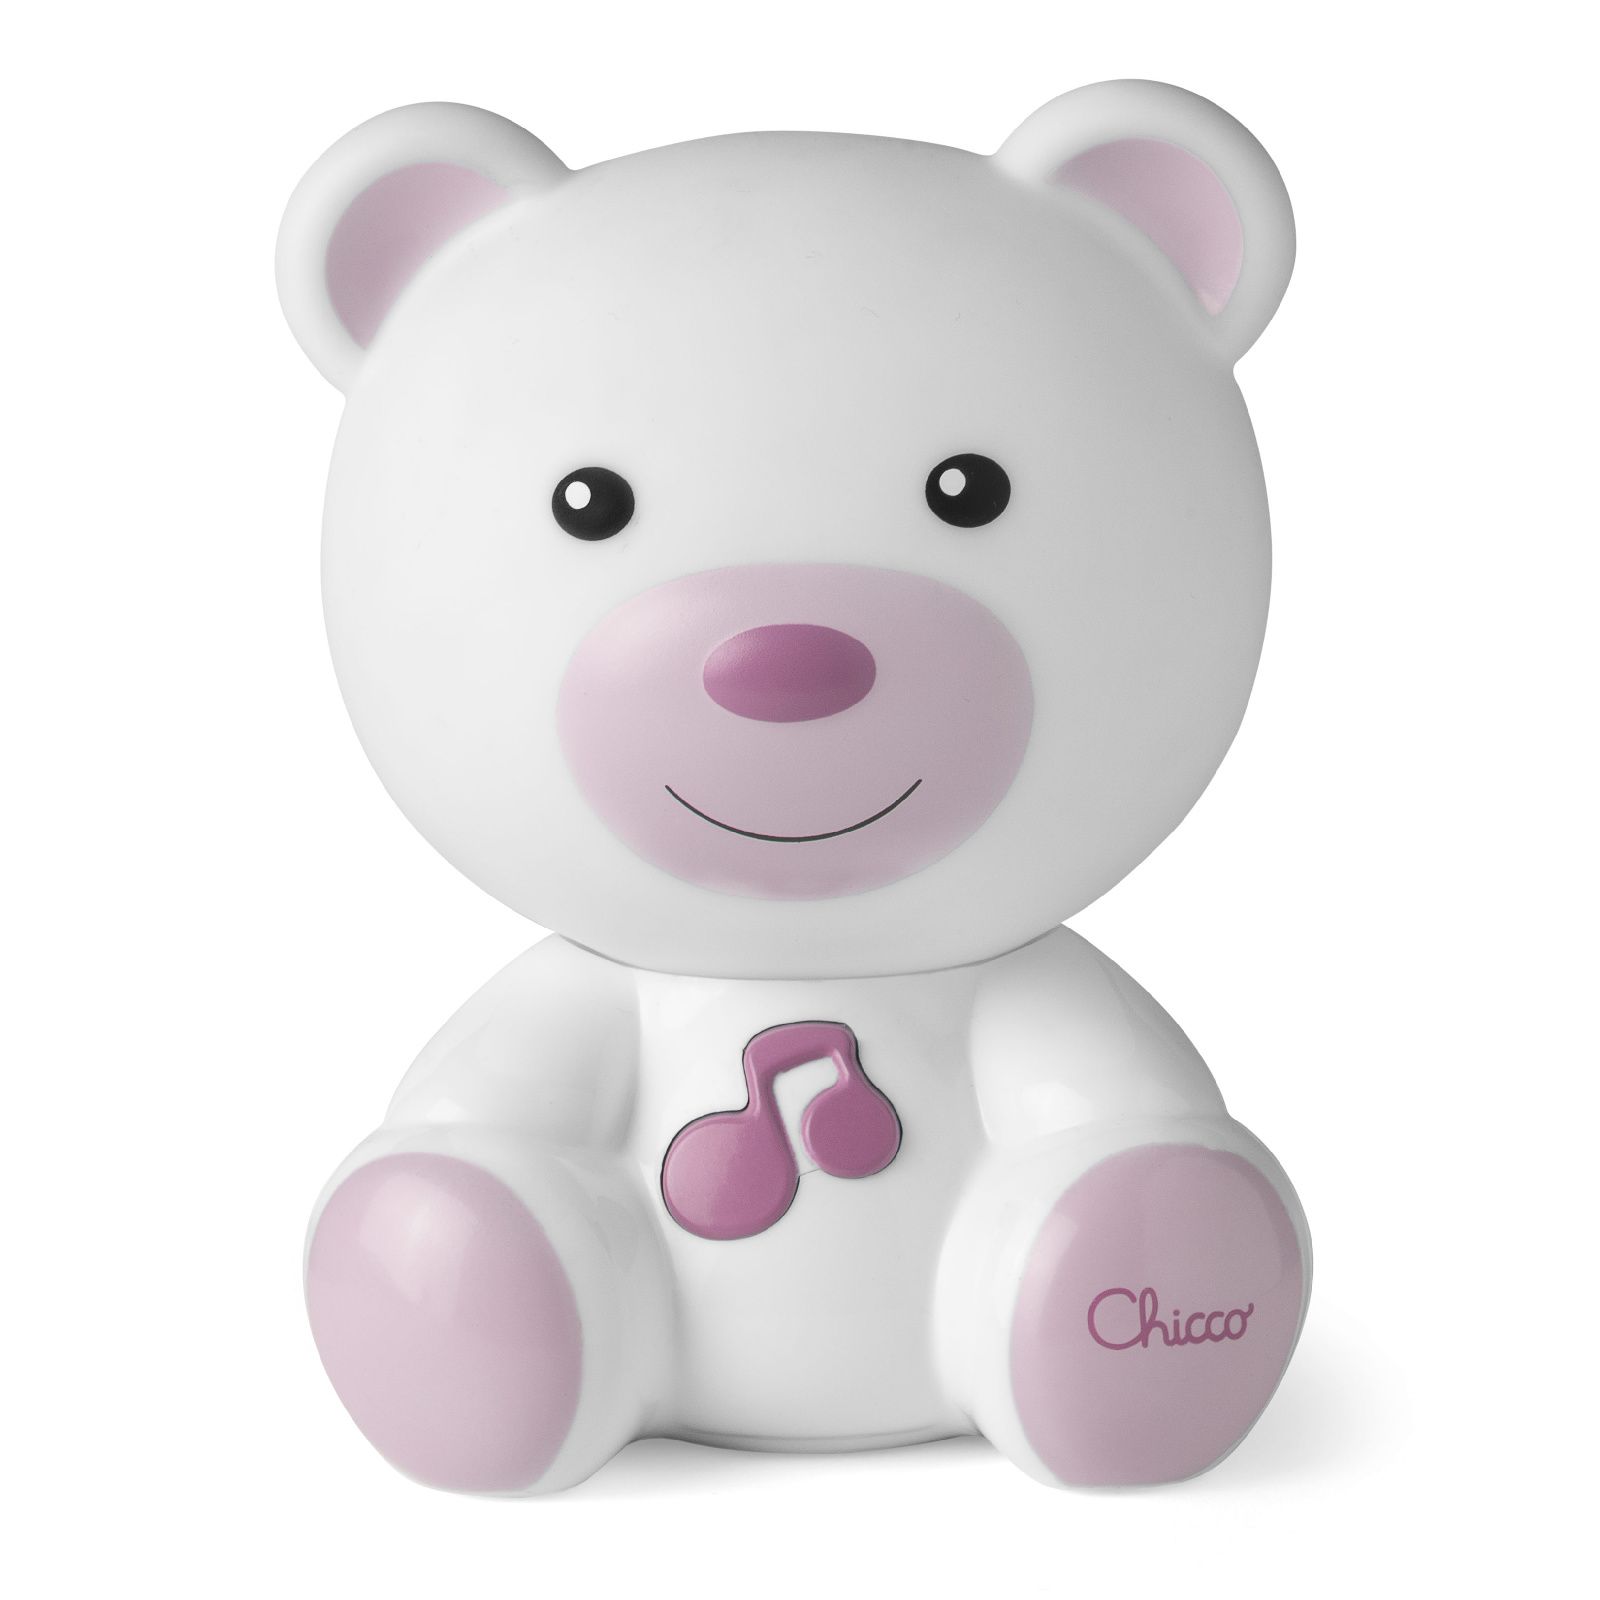 Ночник Медвежонок Chicco Dreamlight розовый игрушка для сна chicco мишка мягкая музыкальная с ночником проектором розовый